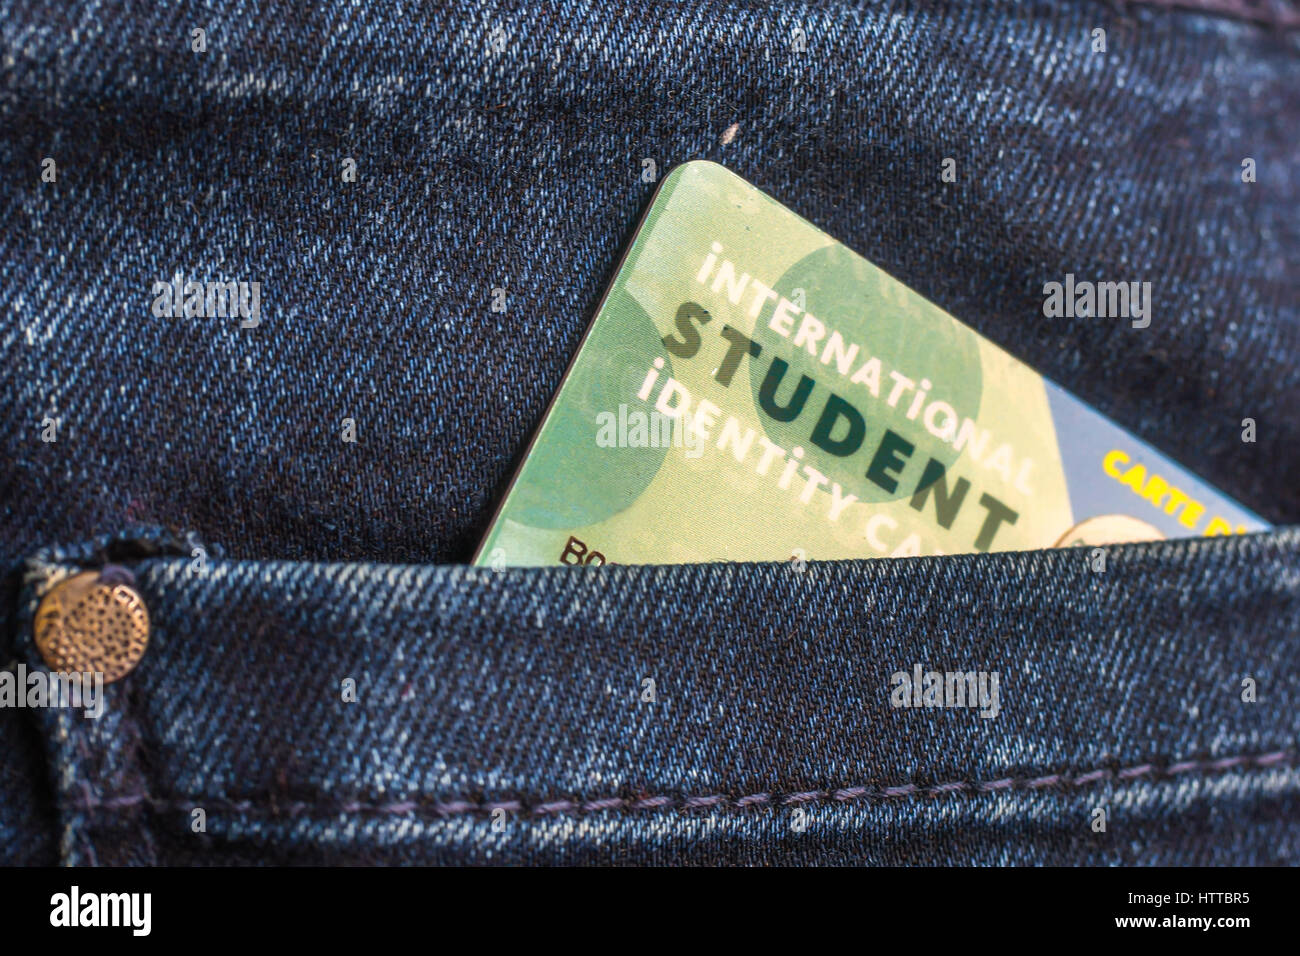 Carnet de estudiante internacional en el bolsillo trasero de los pantalones vaqueros azules Foto de stock